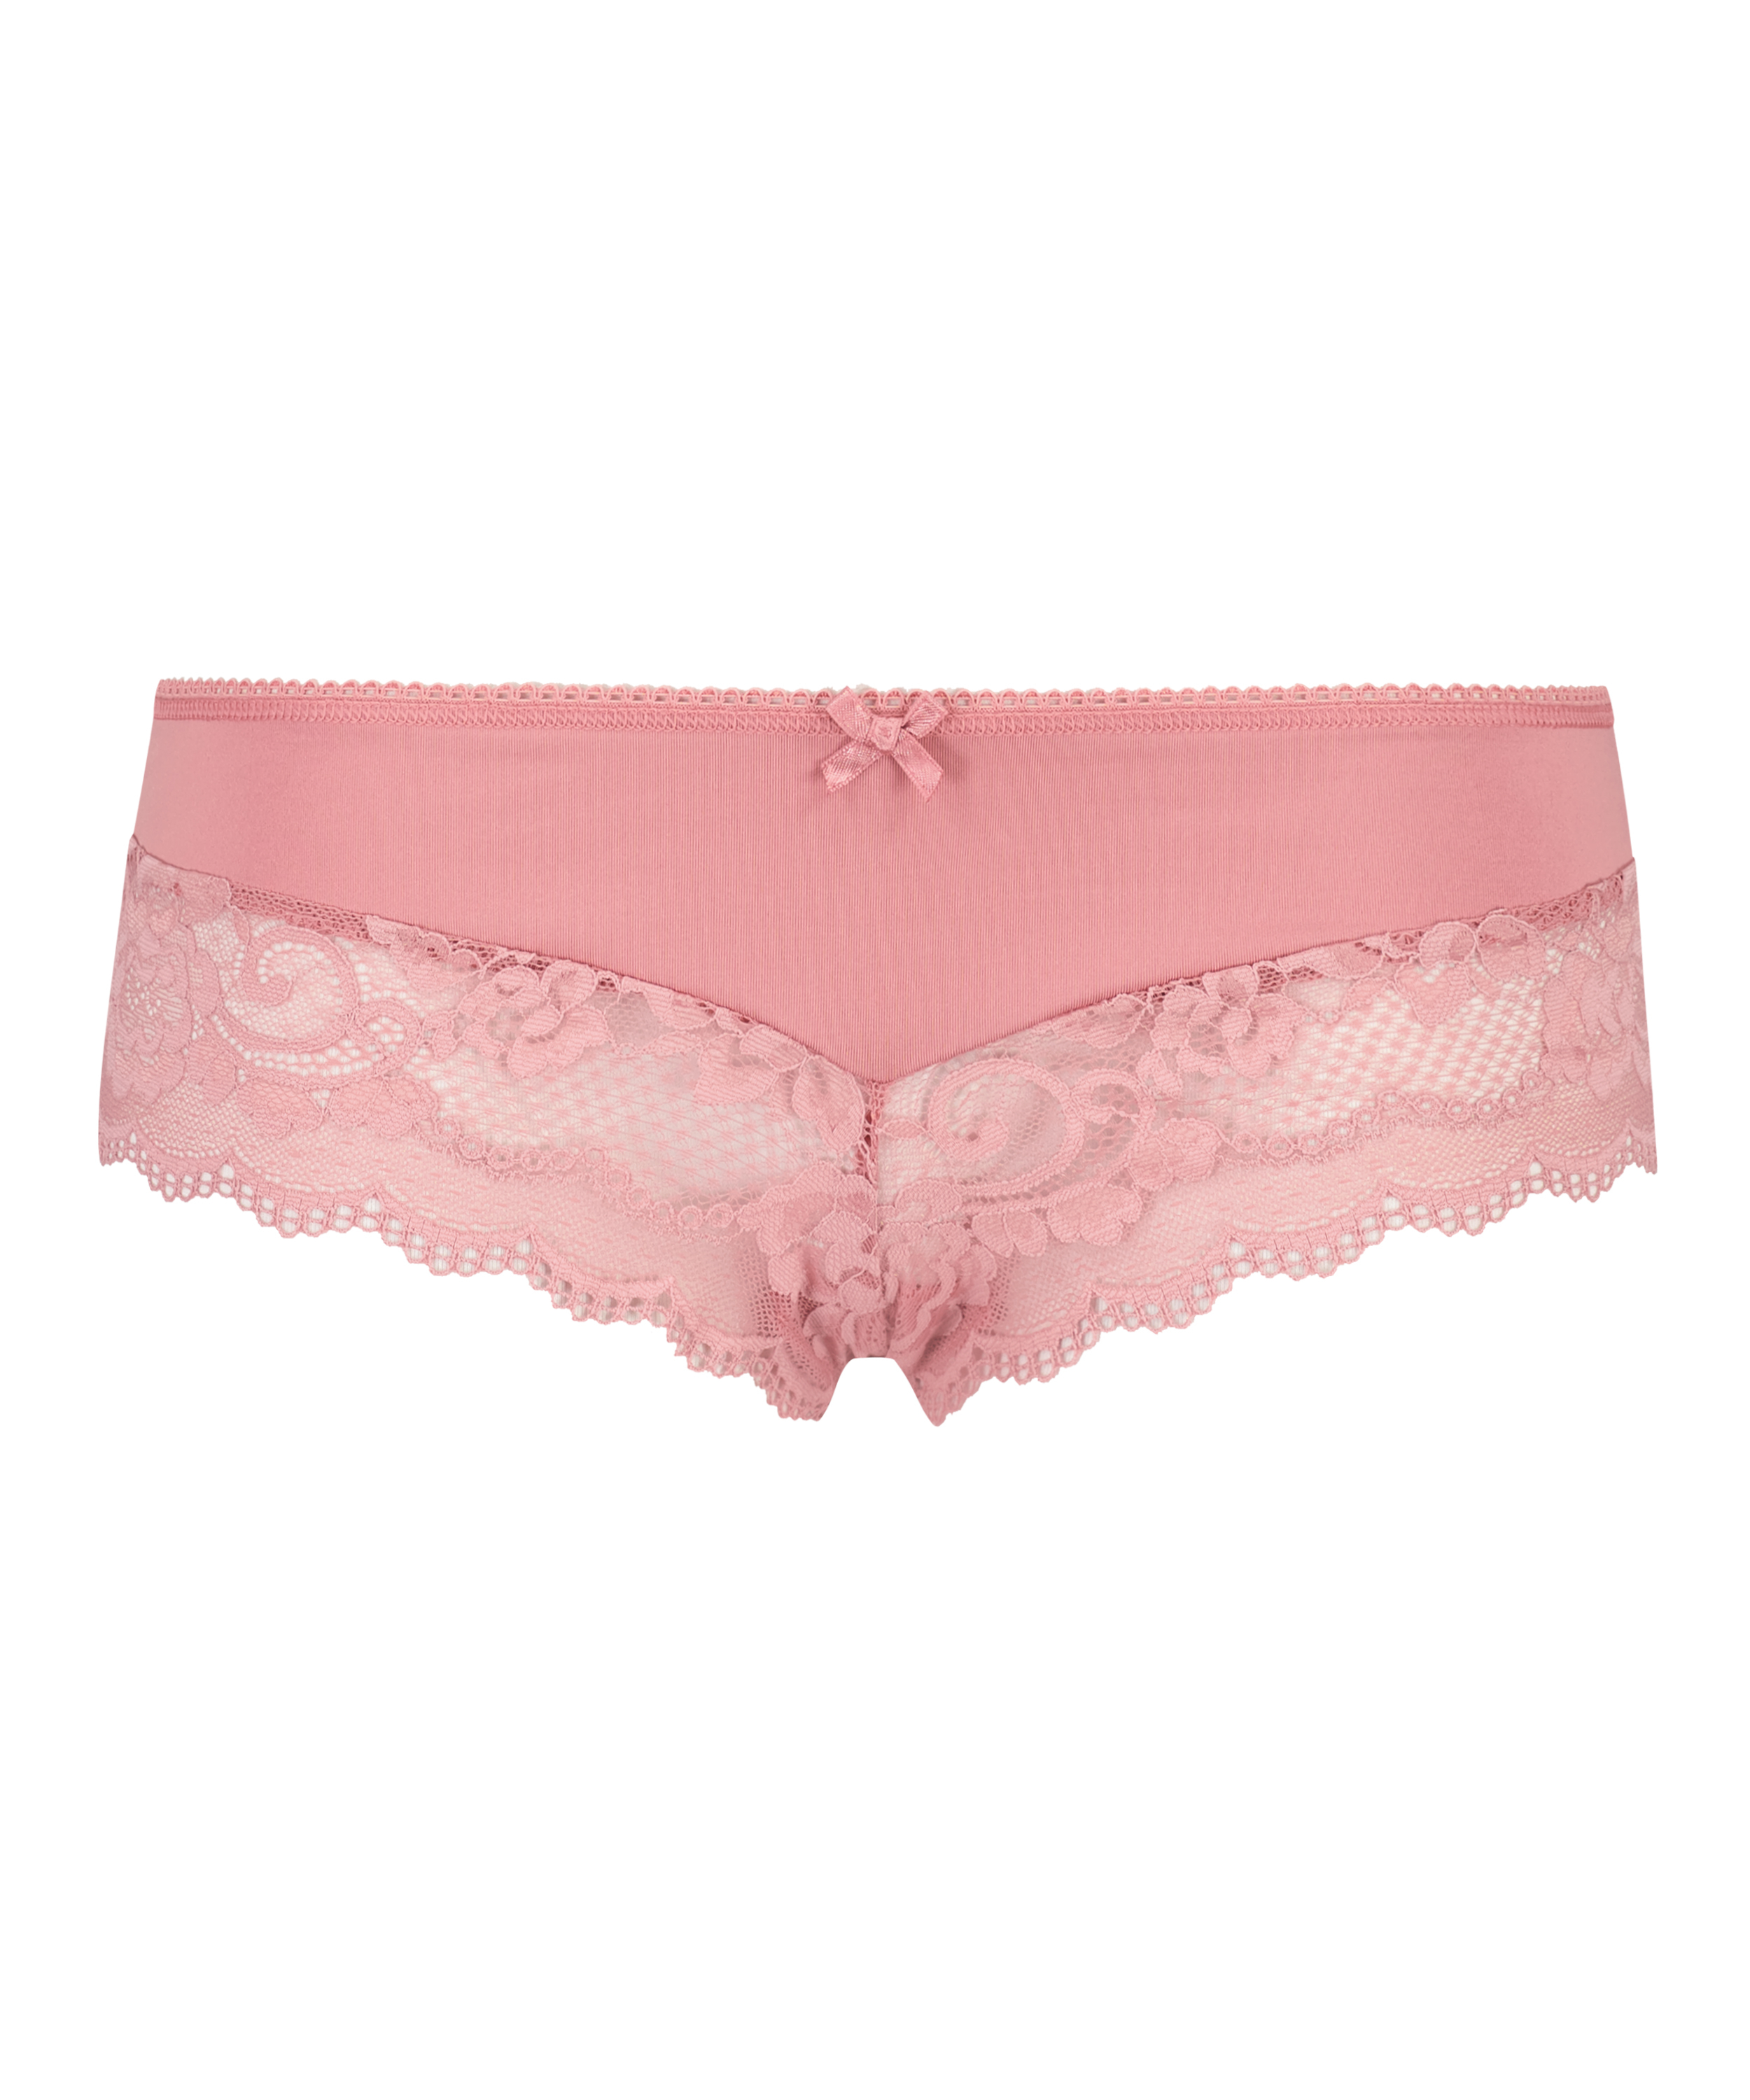 Sia Brazilian shorts, Pink, main